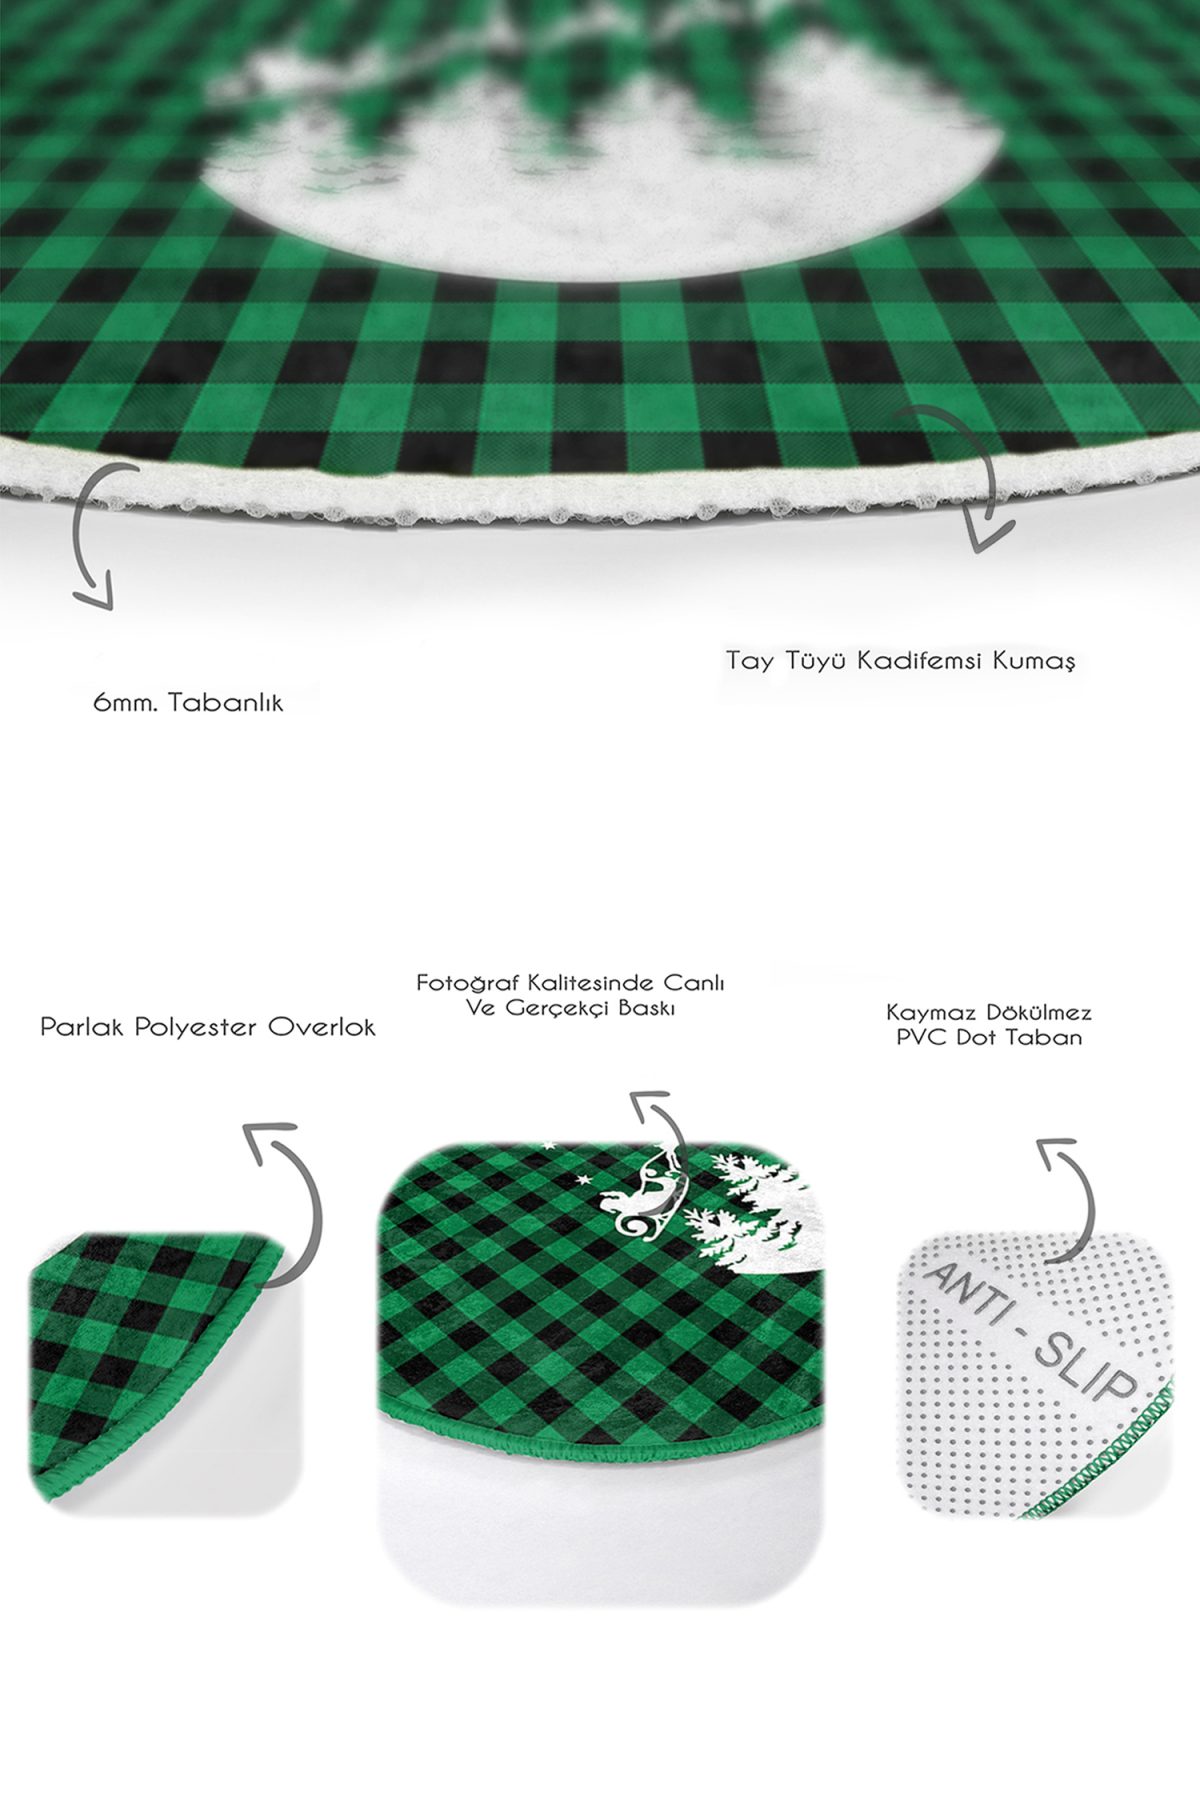 Yeşil Ekose Motifli Yılbaşı Tasarımlı 2'li Oval Kaymaz Tabanlı Mutfak Paspas Takımı & Banyo Halısı Realhomes